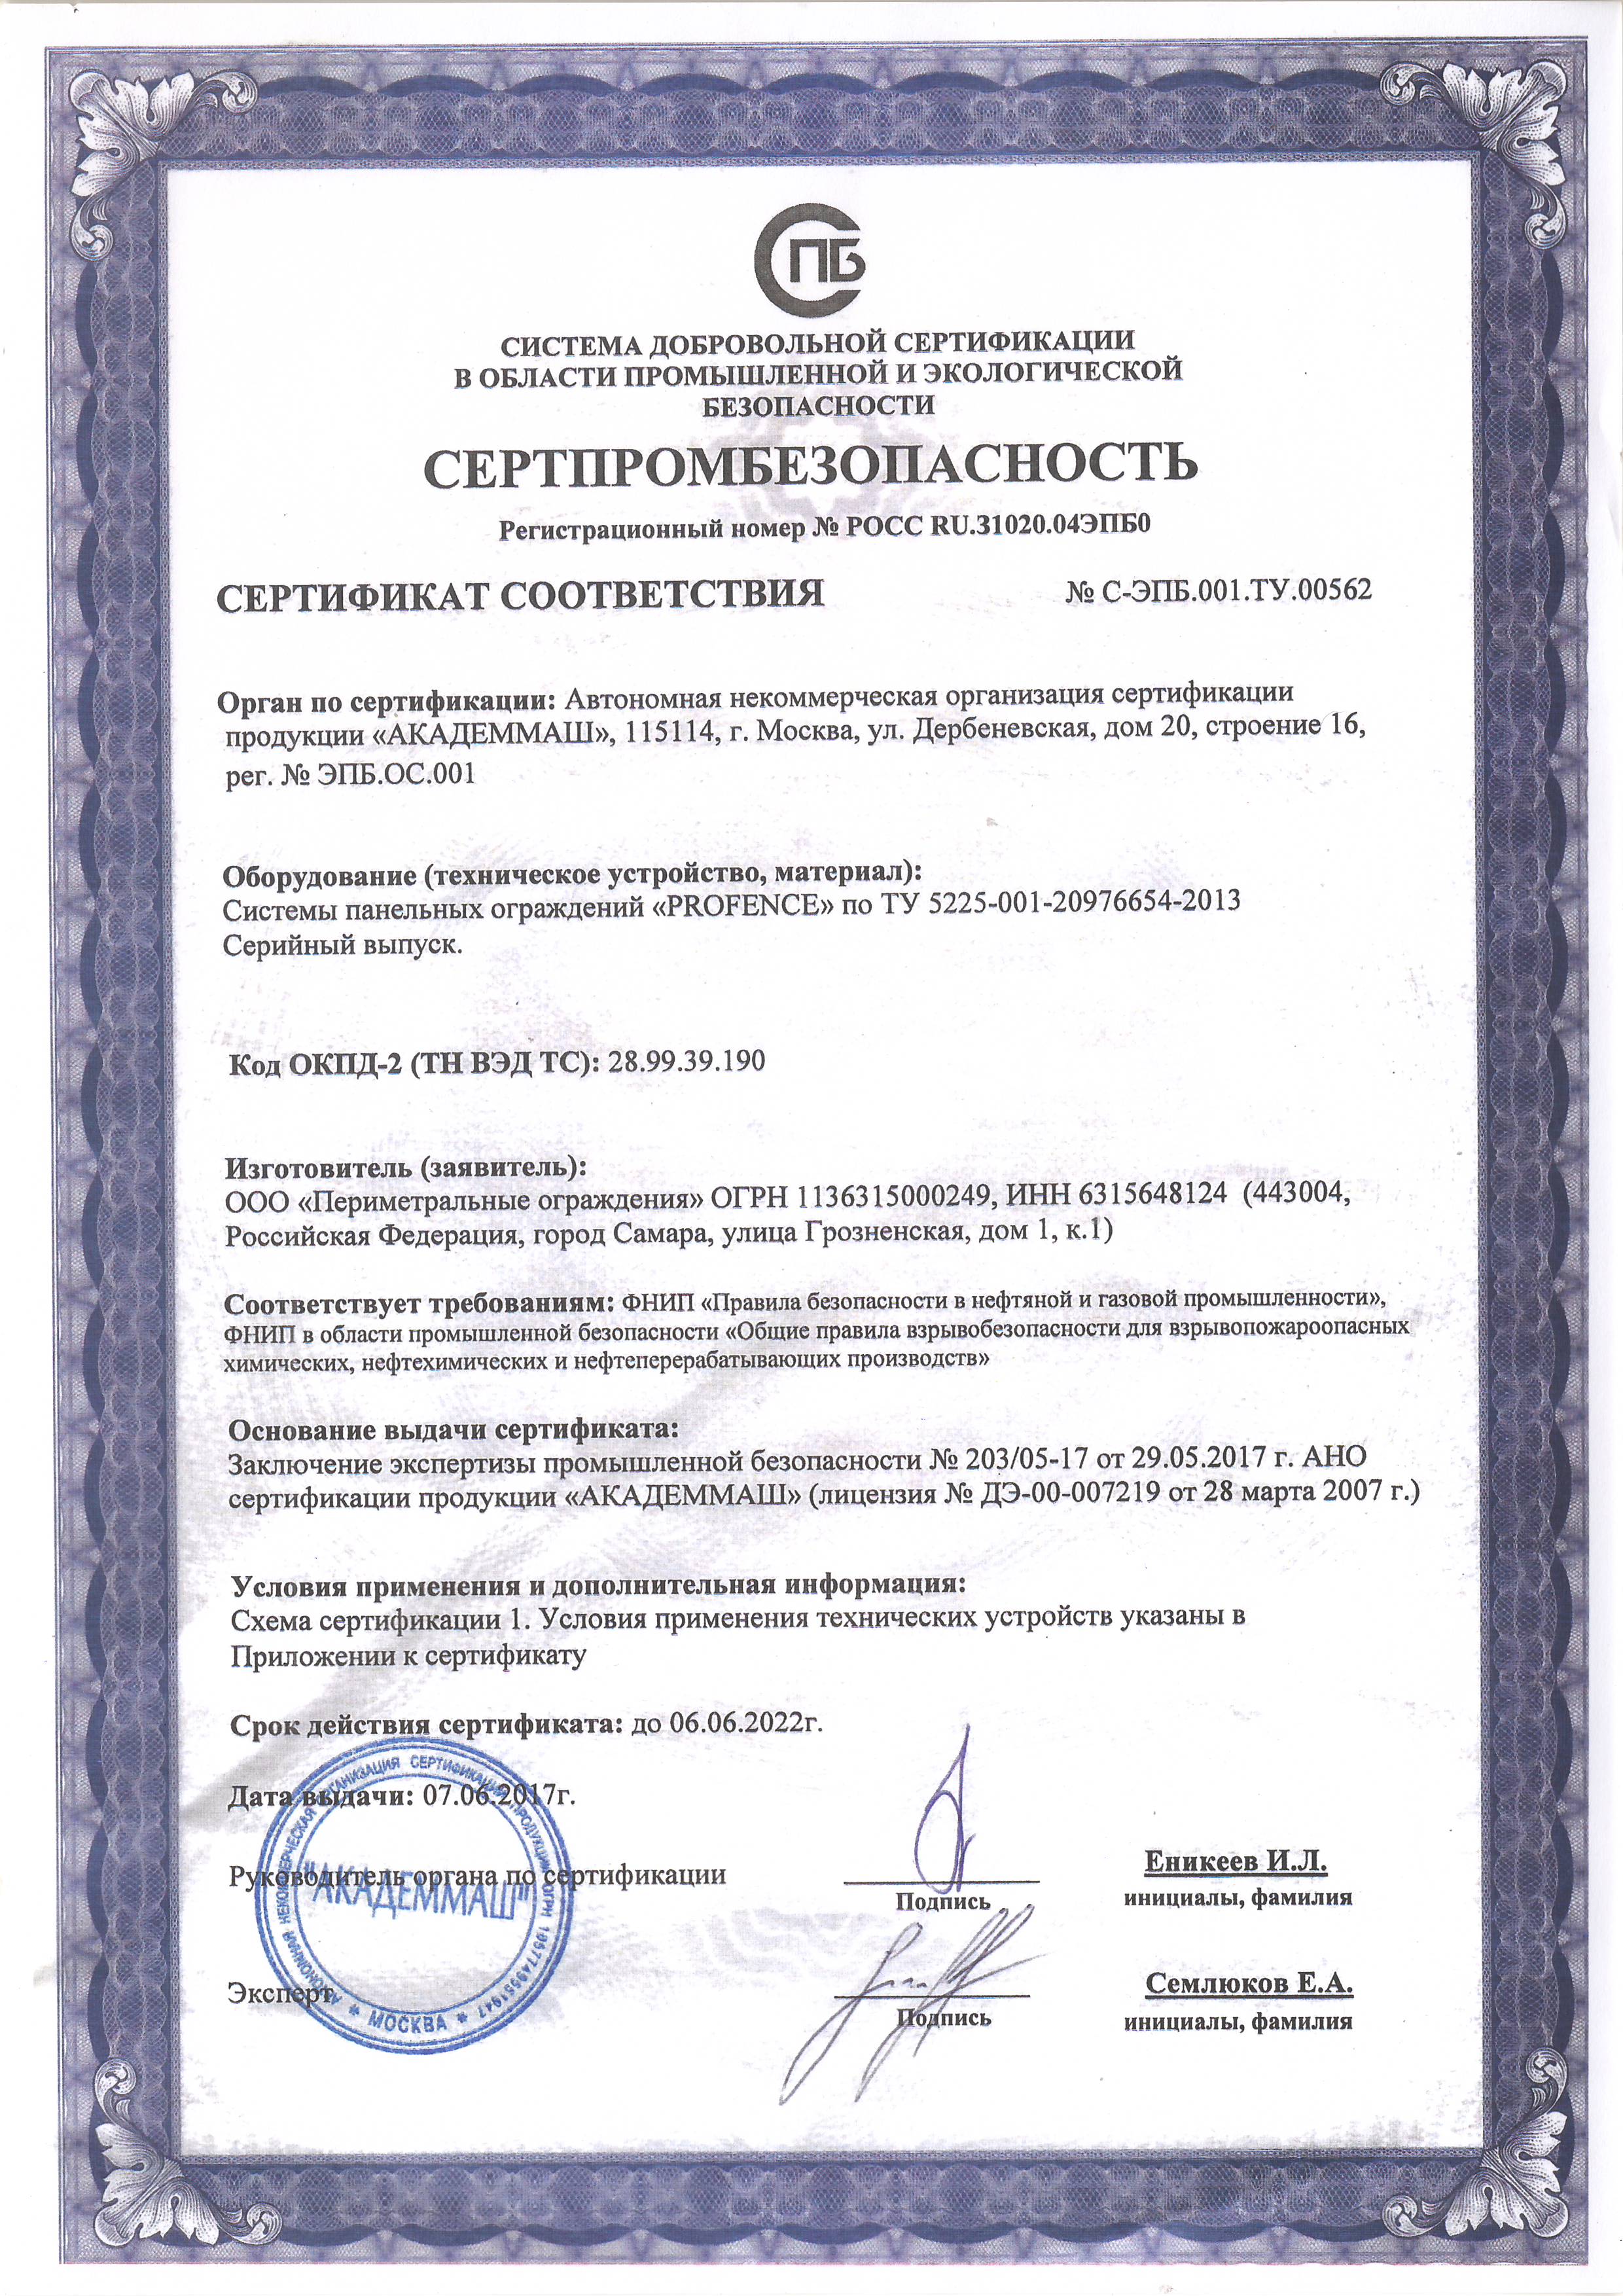 Сертификат соответствия СЕРТПРОМБЕЗОПАСНОСТЬ на системы панельных ограждений "PROFENCE" 